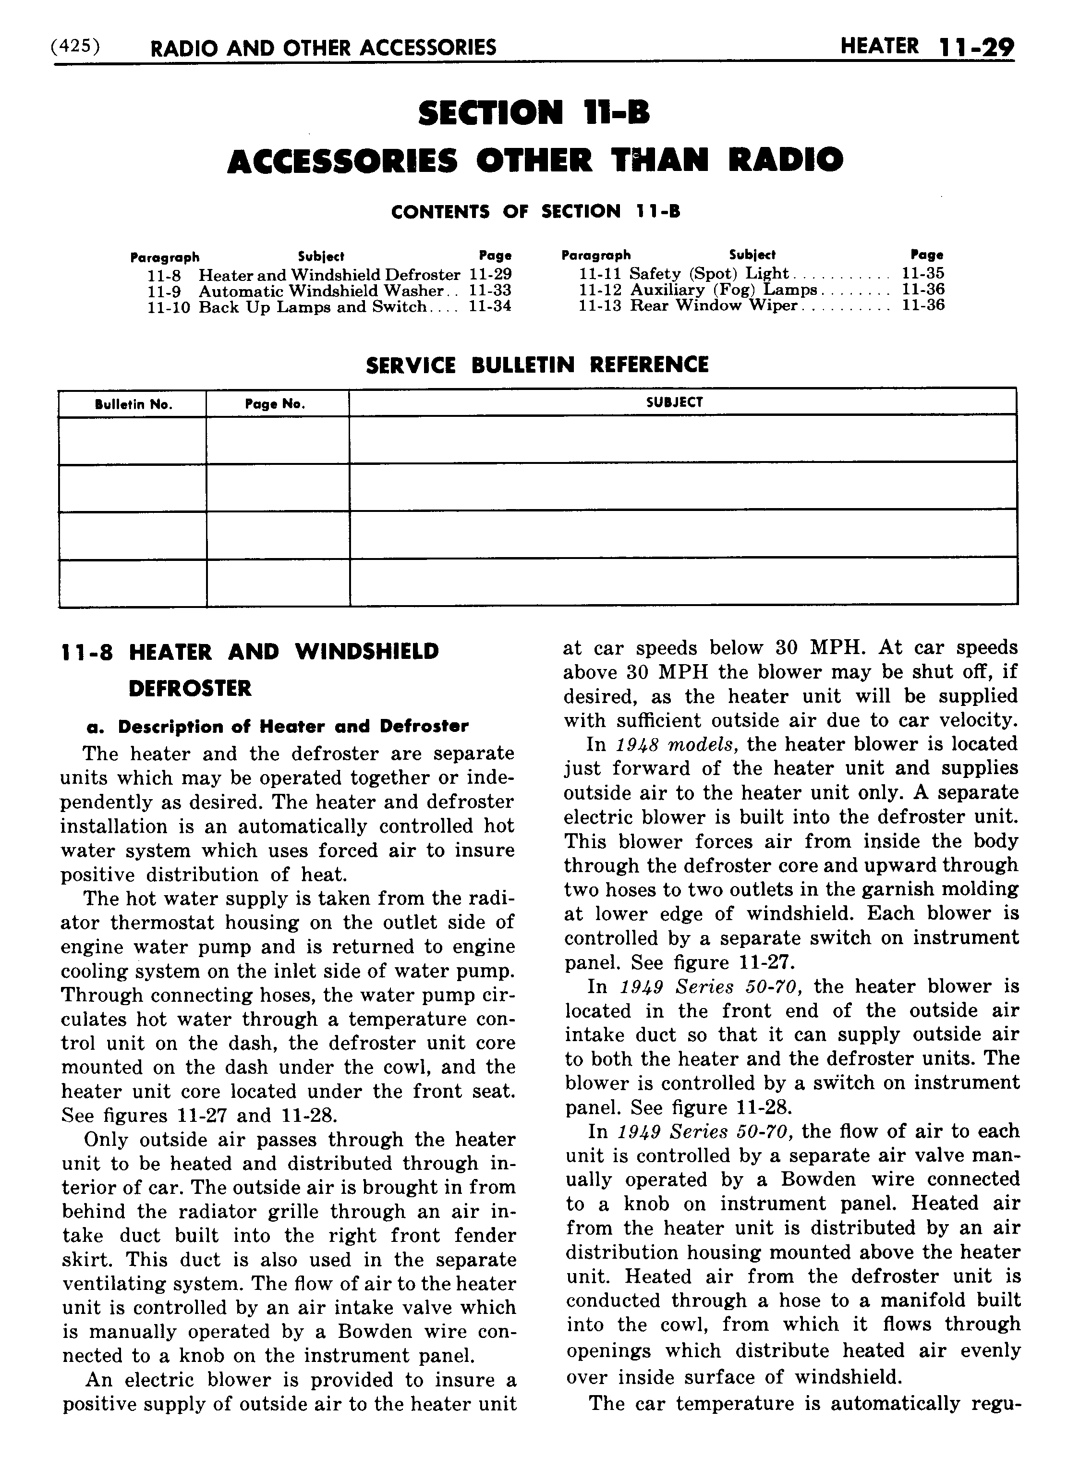 n_12 1948 Buick Shop Manual - Accessories-029-029.jpg